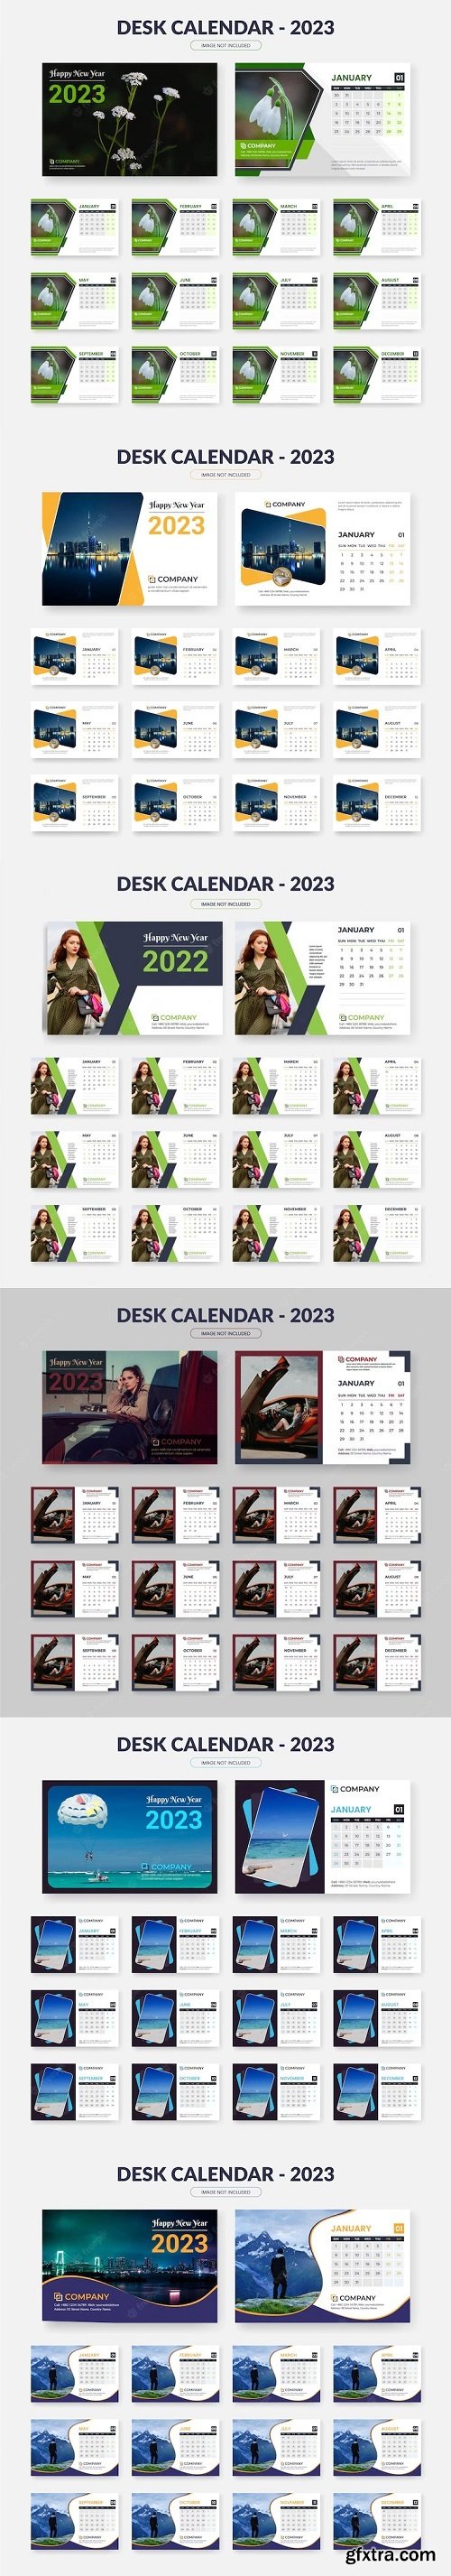 Modern design 2023 calendar design, new year 2023 desk calendar template